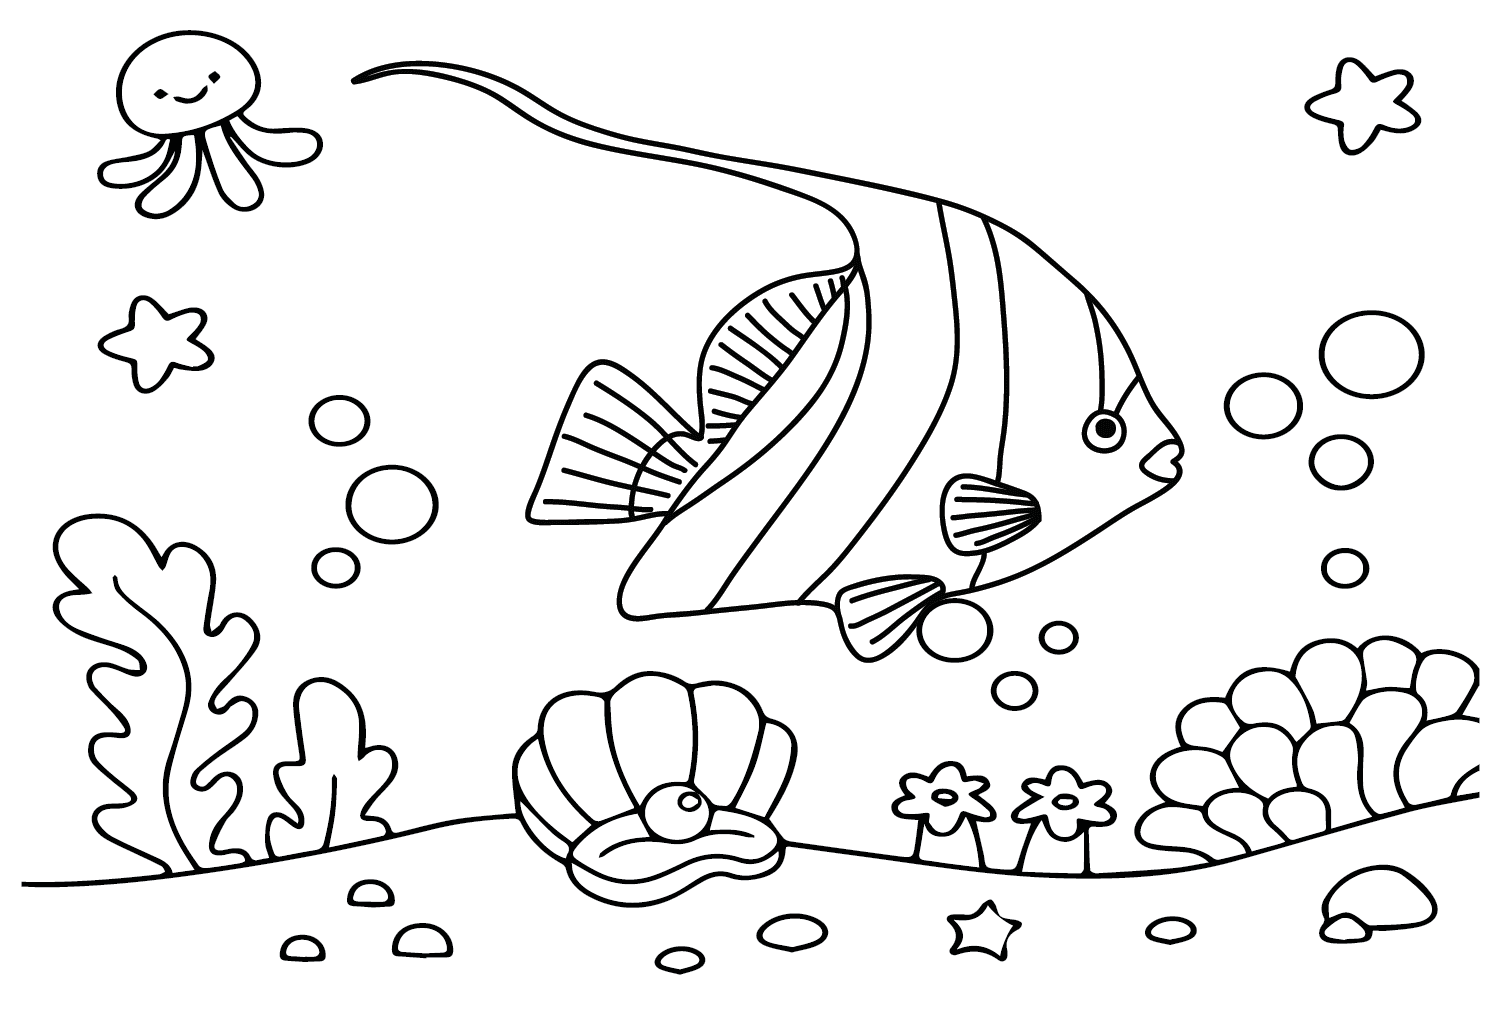 图片来自 Pennant Coralfish 的 Pennant Coralfish